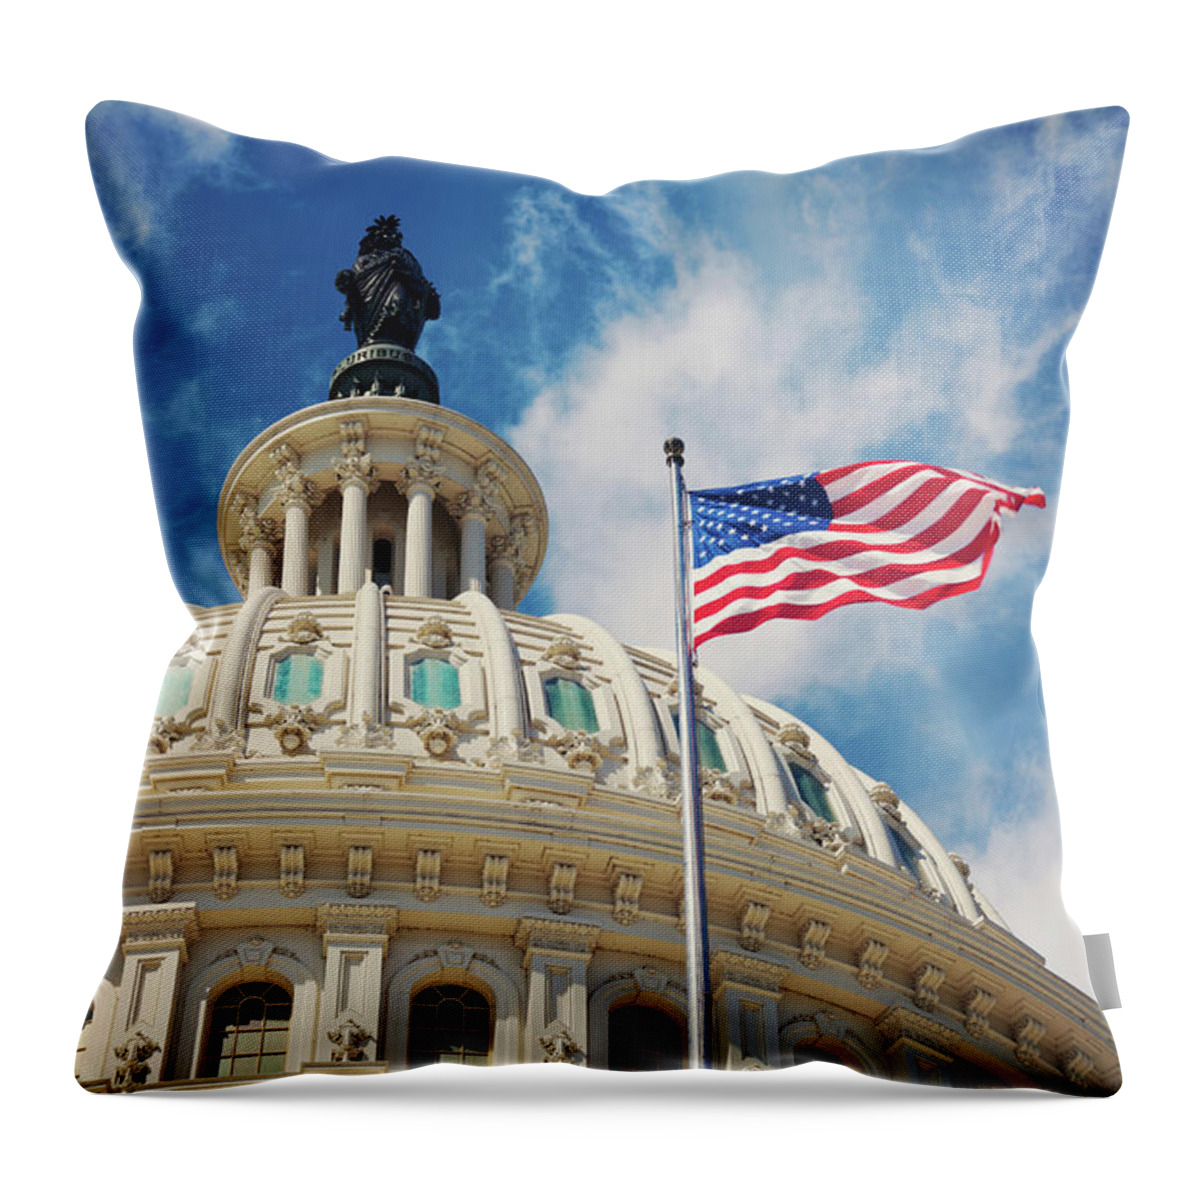 Outdoors Throw Pillow featuring the photograph Usa, Columbia, Washington Dc, Capitol by Tetra Images - Henryk Sadura